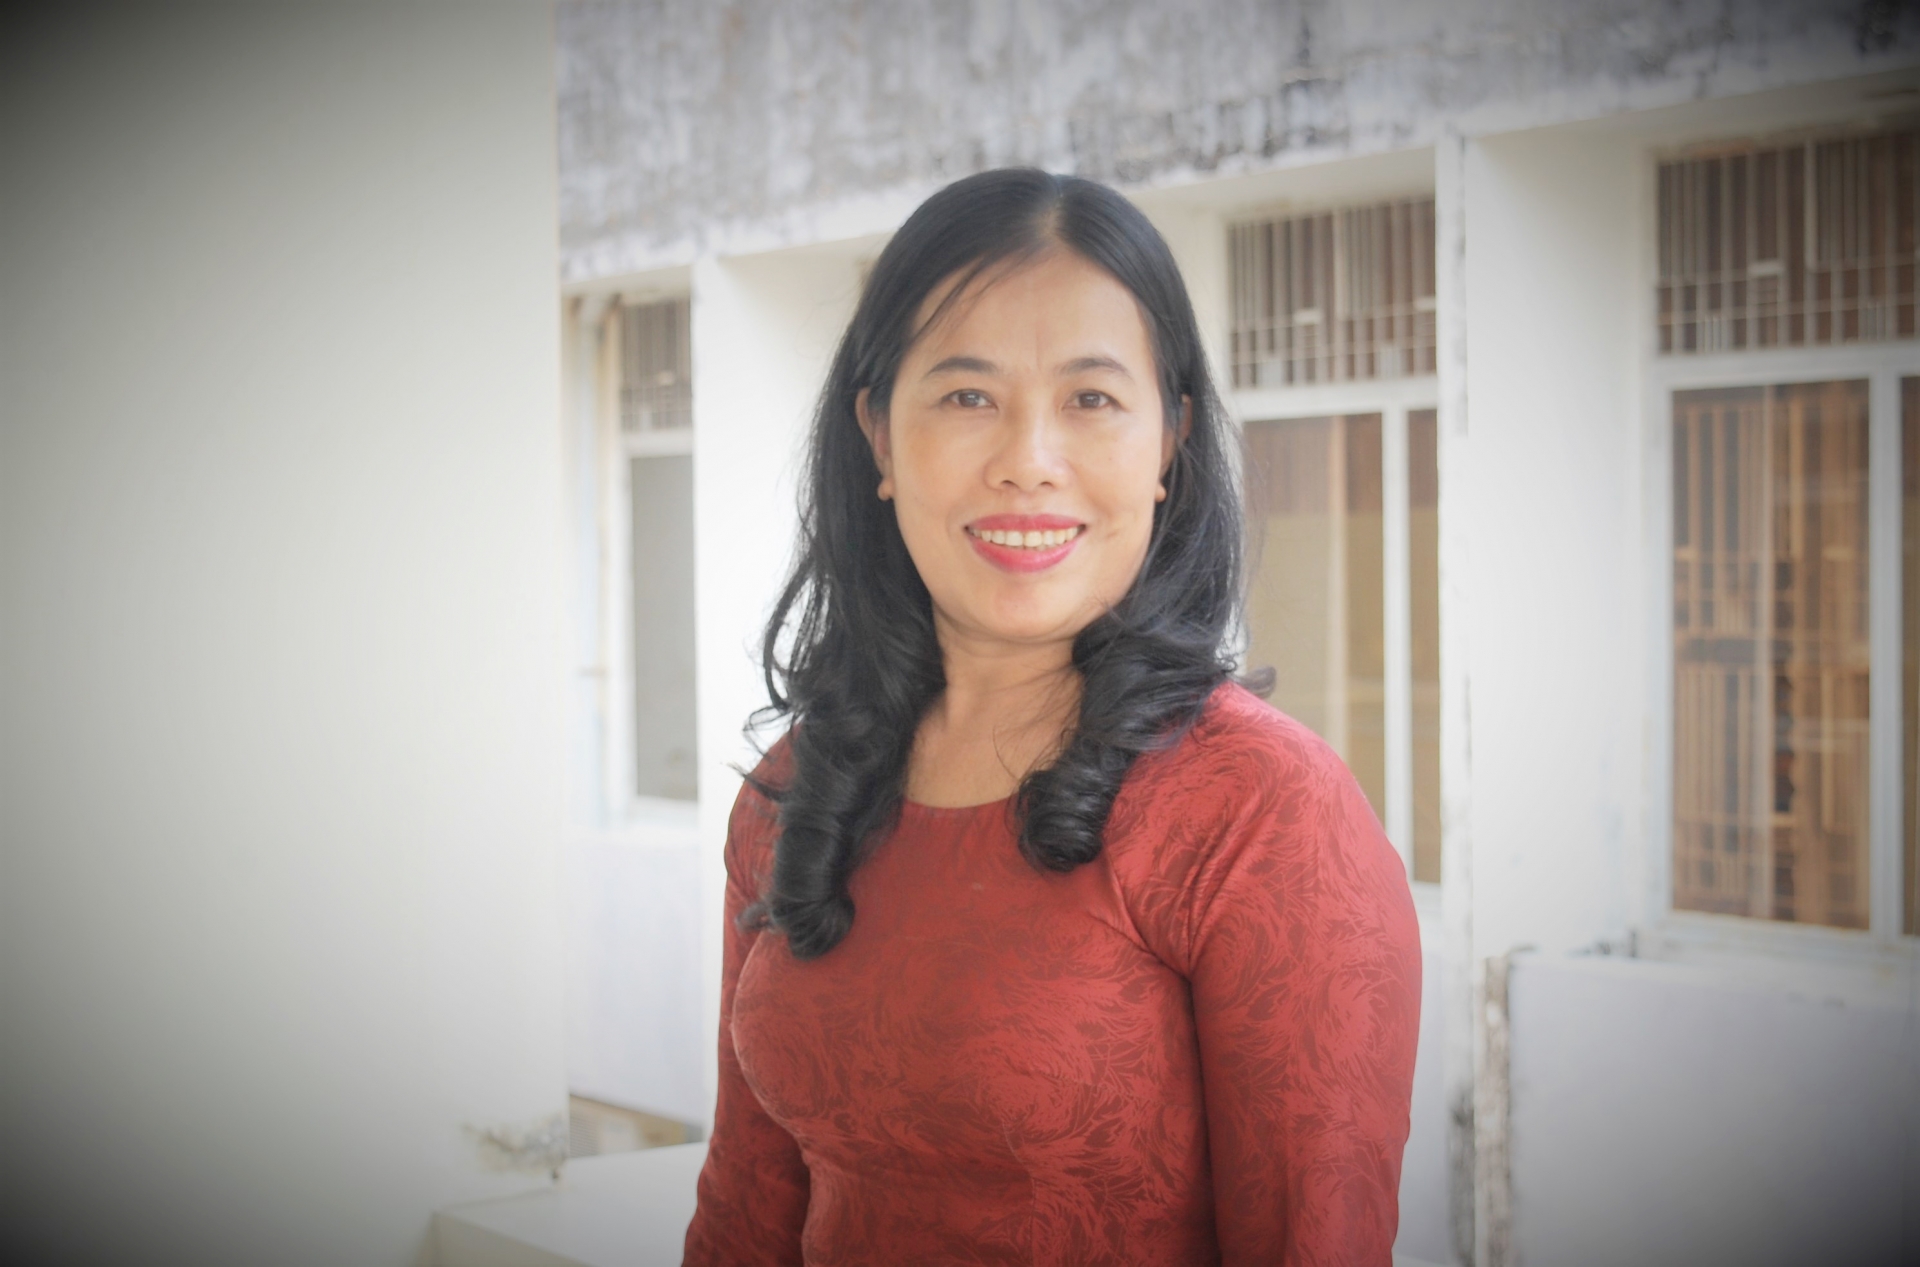 Quảng Nam: Cô giáo vượt qua nghịch cảnh, gìn giữ ‘lửa nghề’